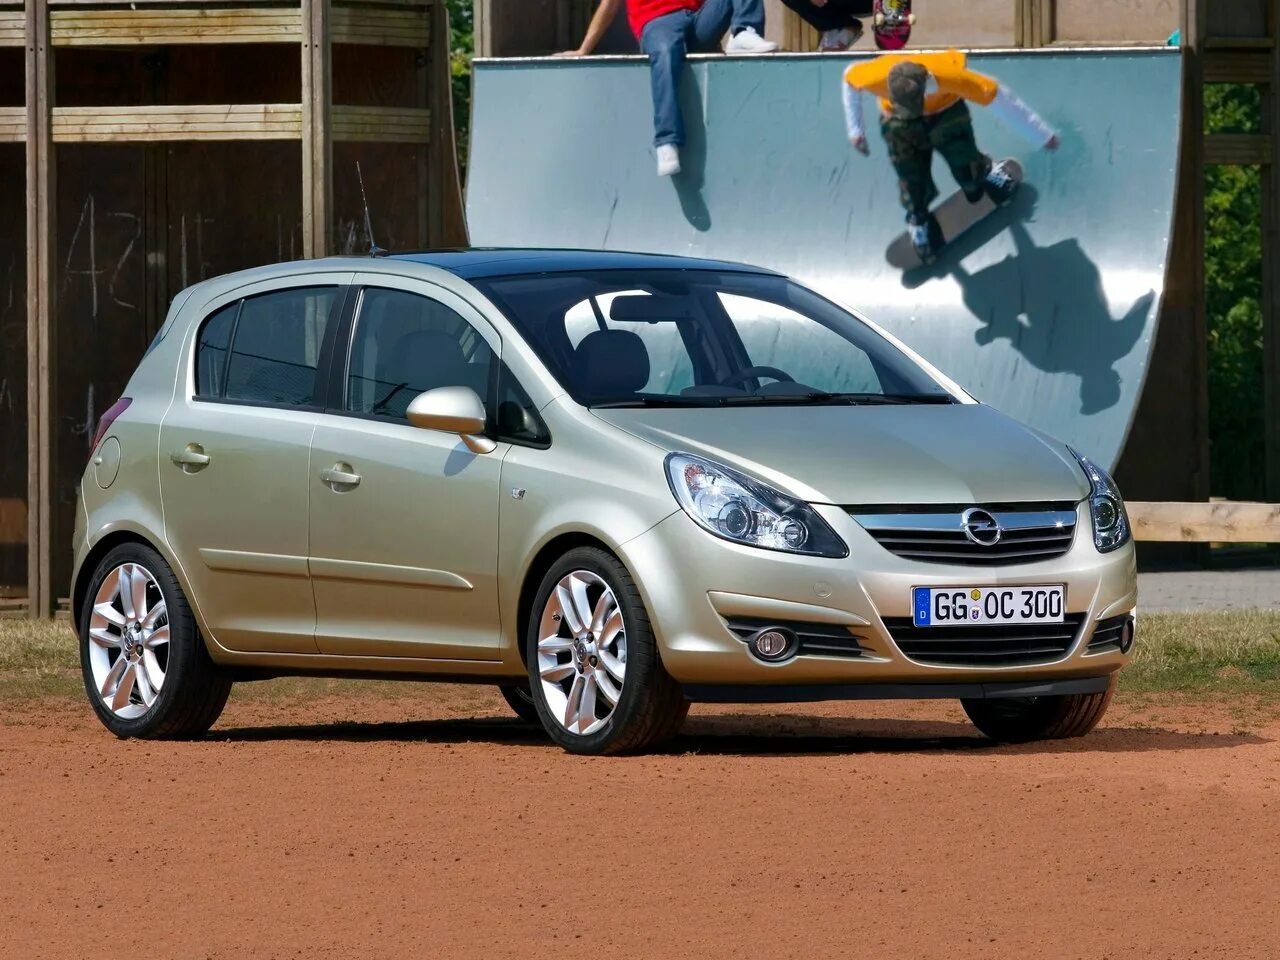 Opel Corsa d 2006. Opel Corsa 2010 1.2. Opel Corsa 2. Opel Corsa d 2006 2010.